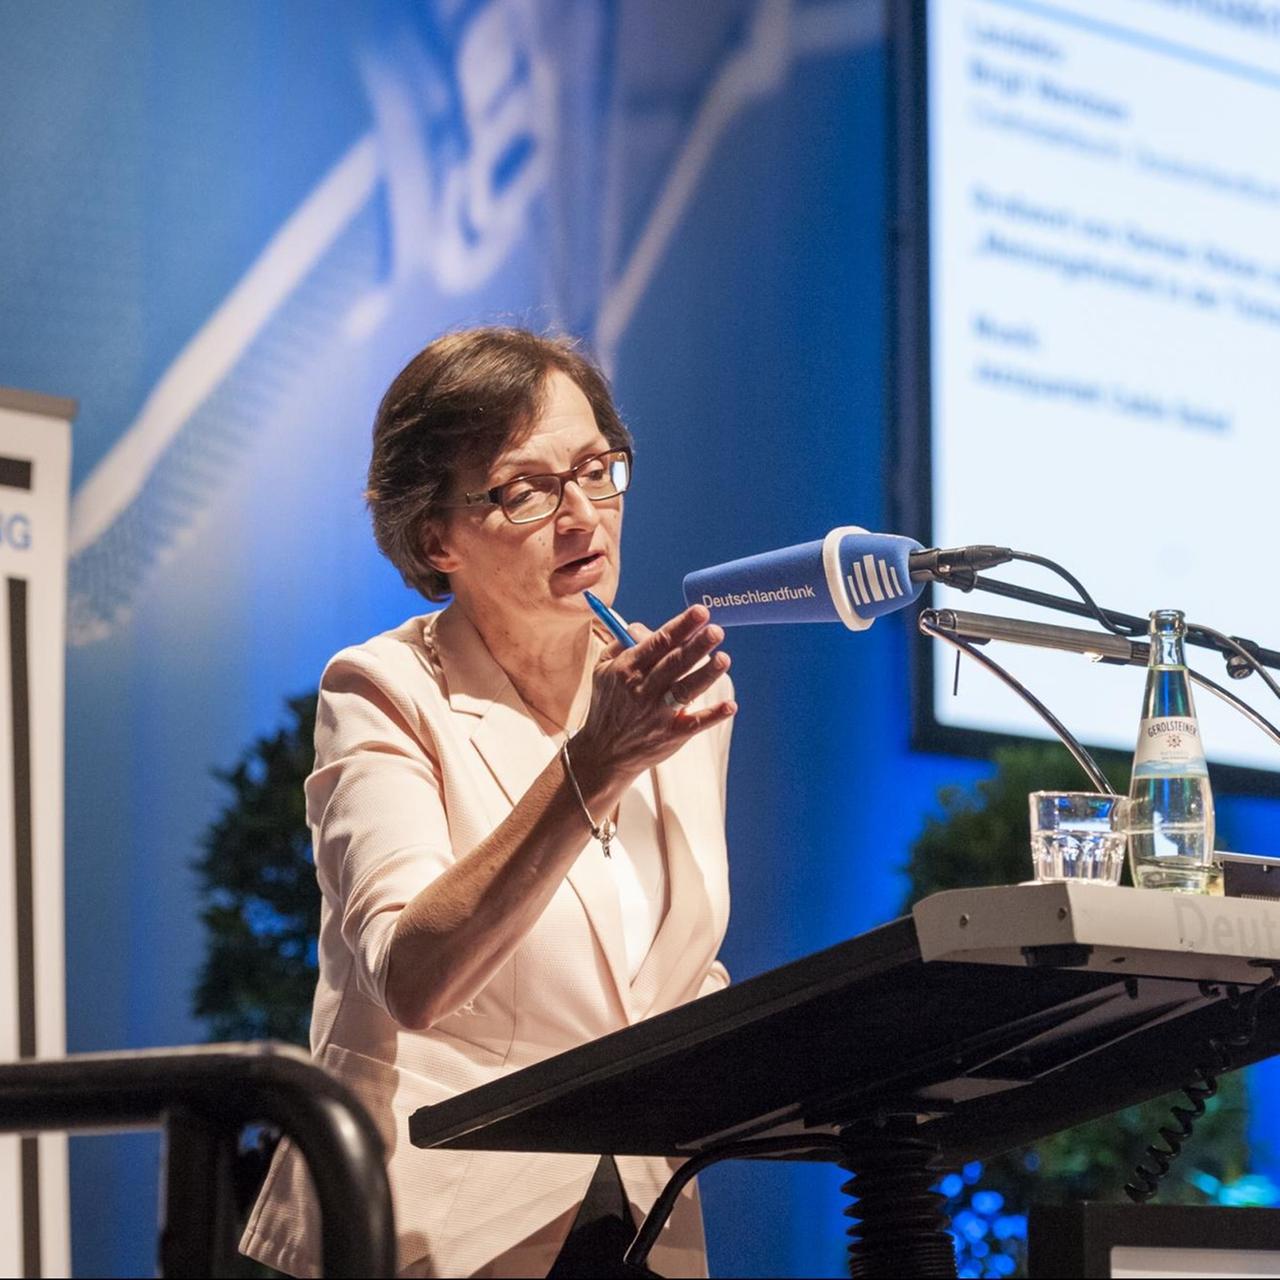 Deutschlandfunk-Chefredakteurin Birgit Wentzien hält die Laudatio auf Netzpolitik.org bei der Verleihung des Günter-Wallraff-Preises für Journalismuskritik.